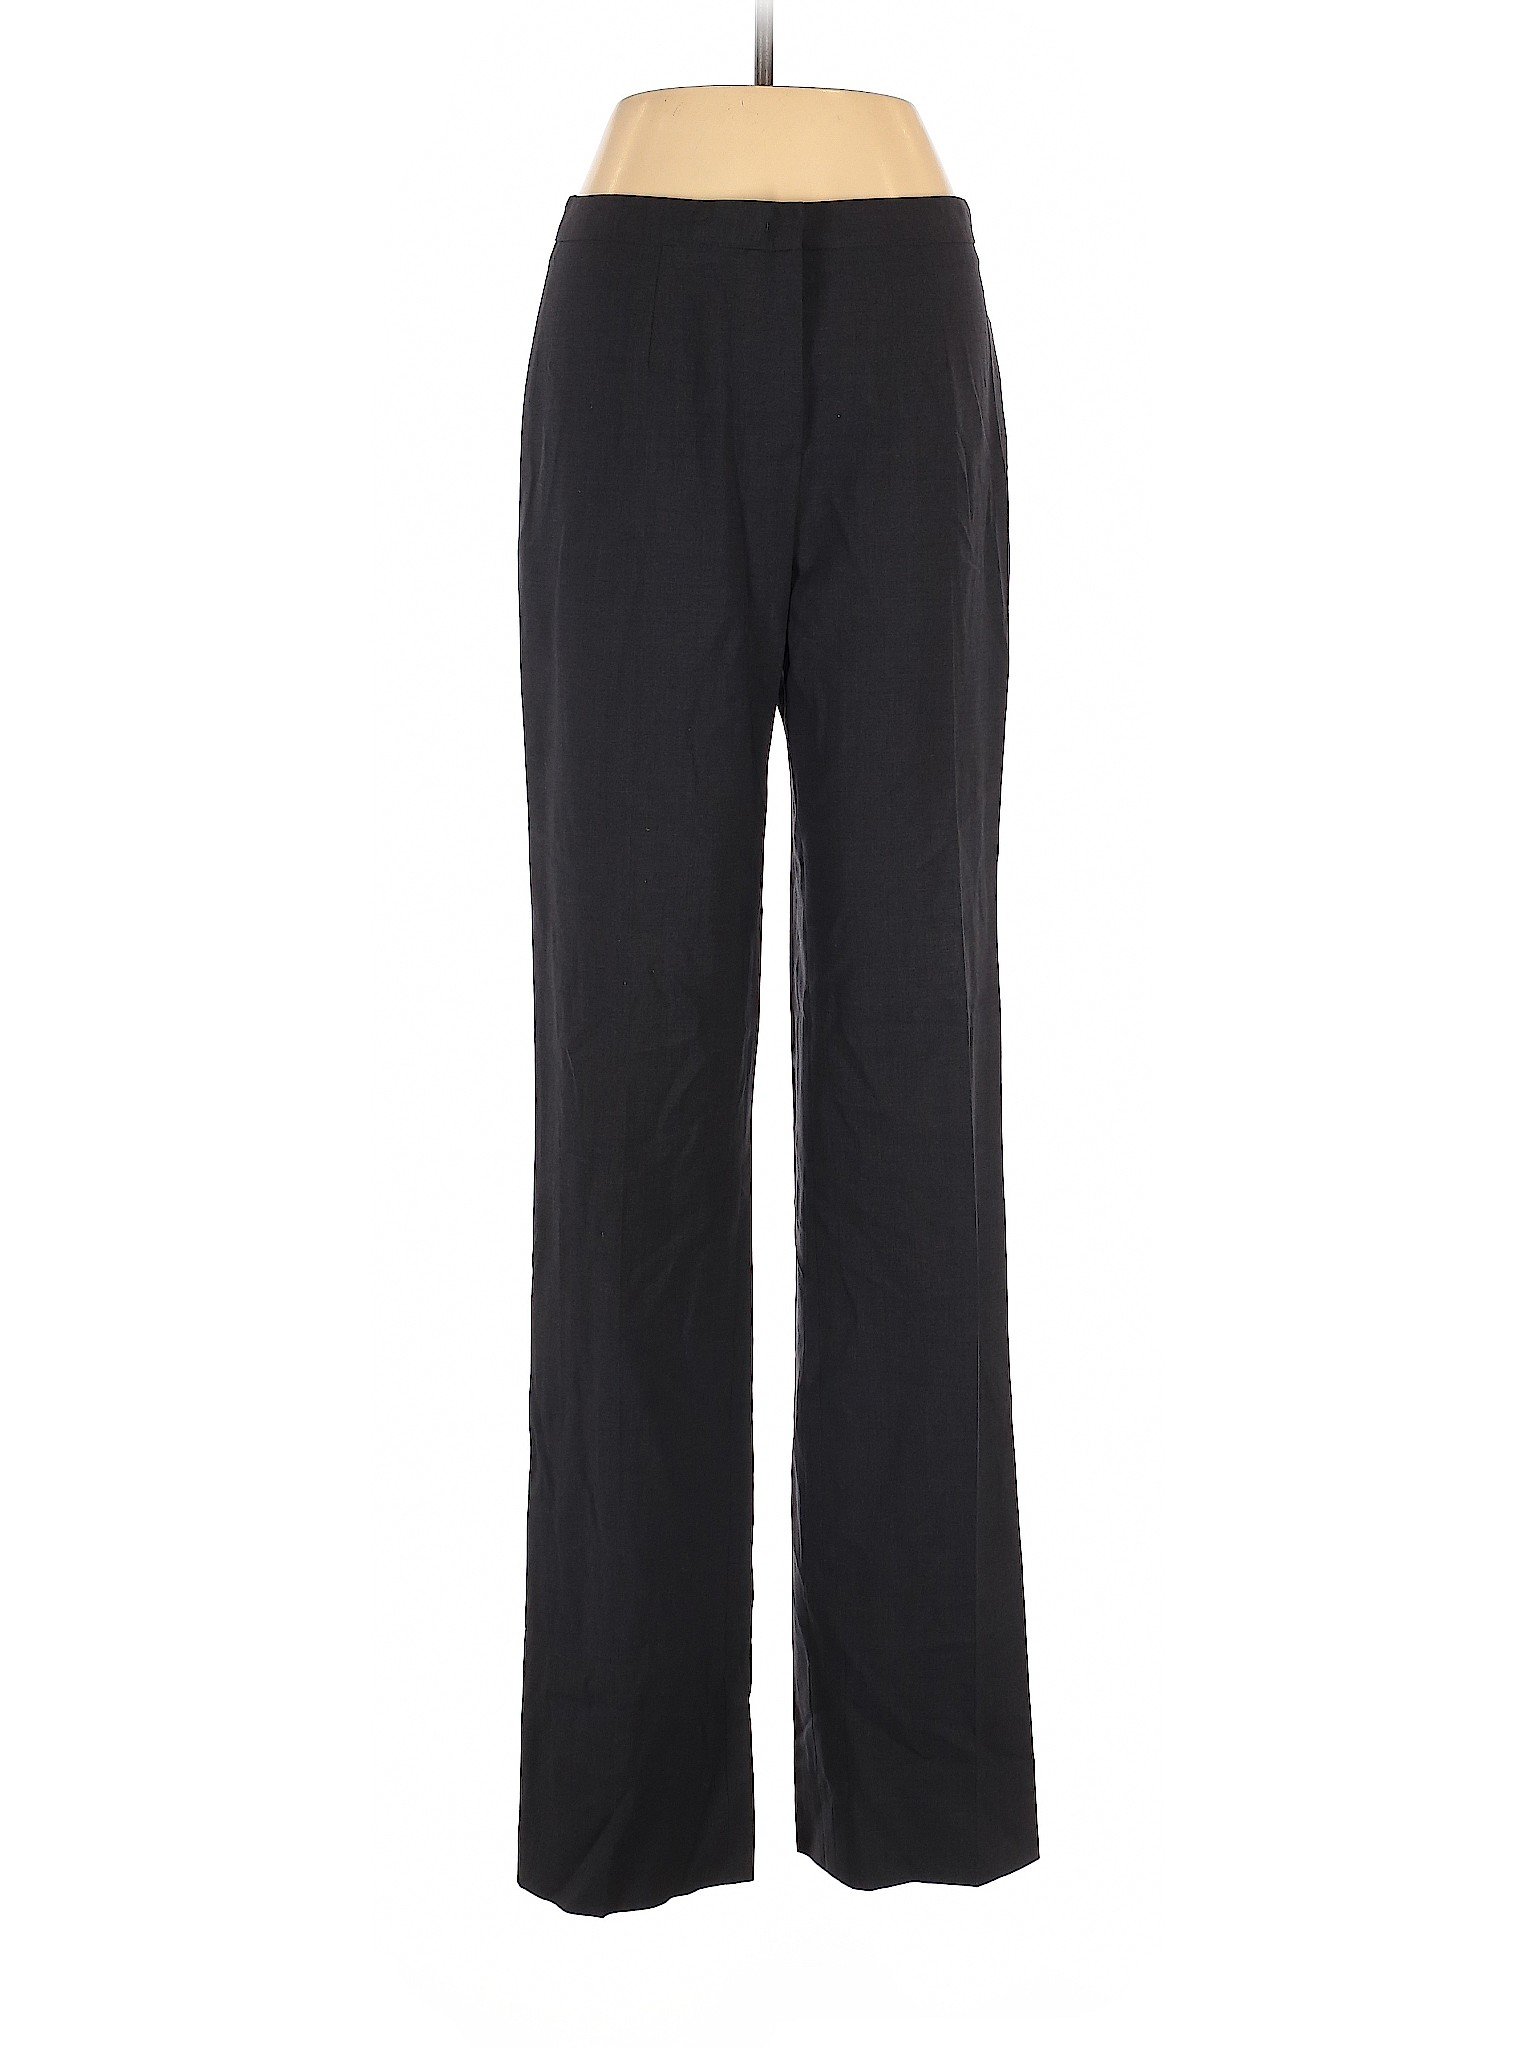 Escada Women Black Wool Pants 36 eur | eBay